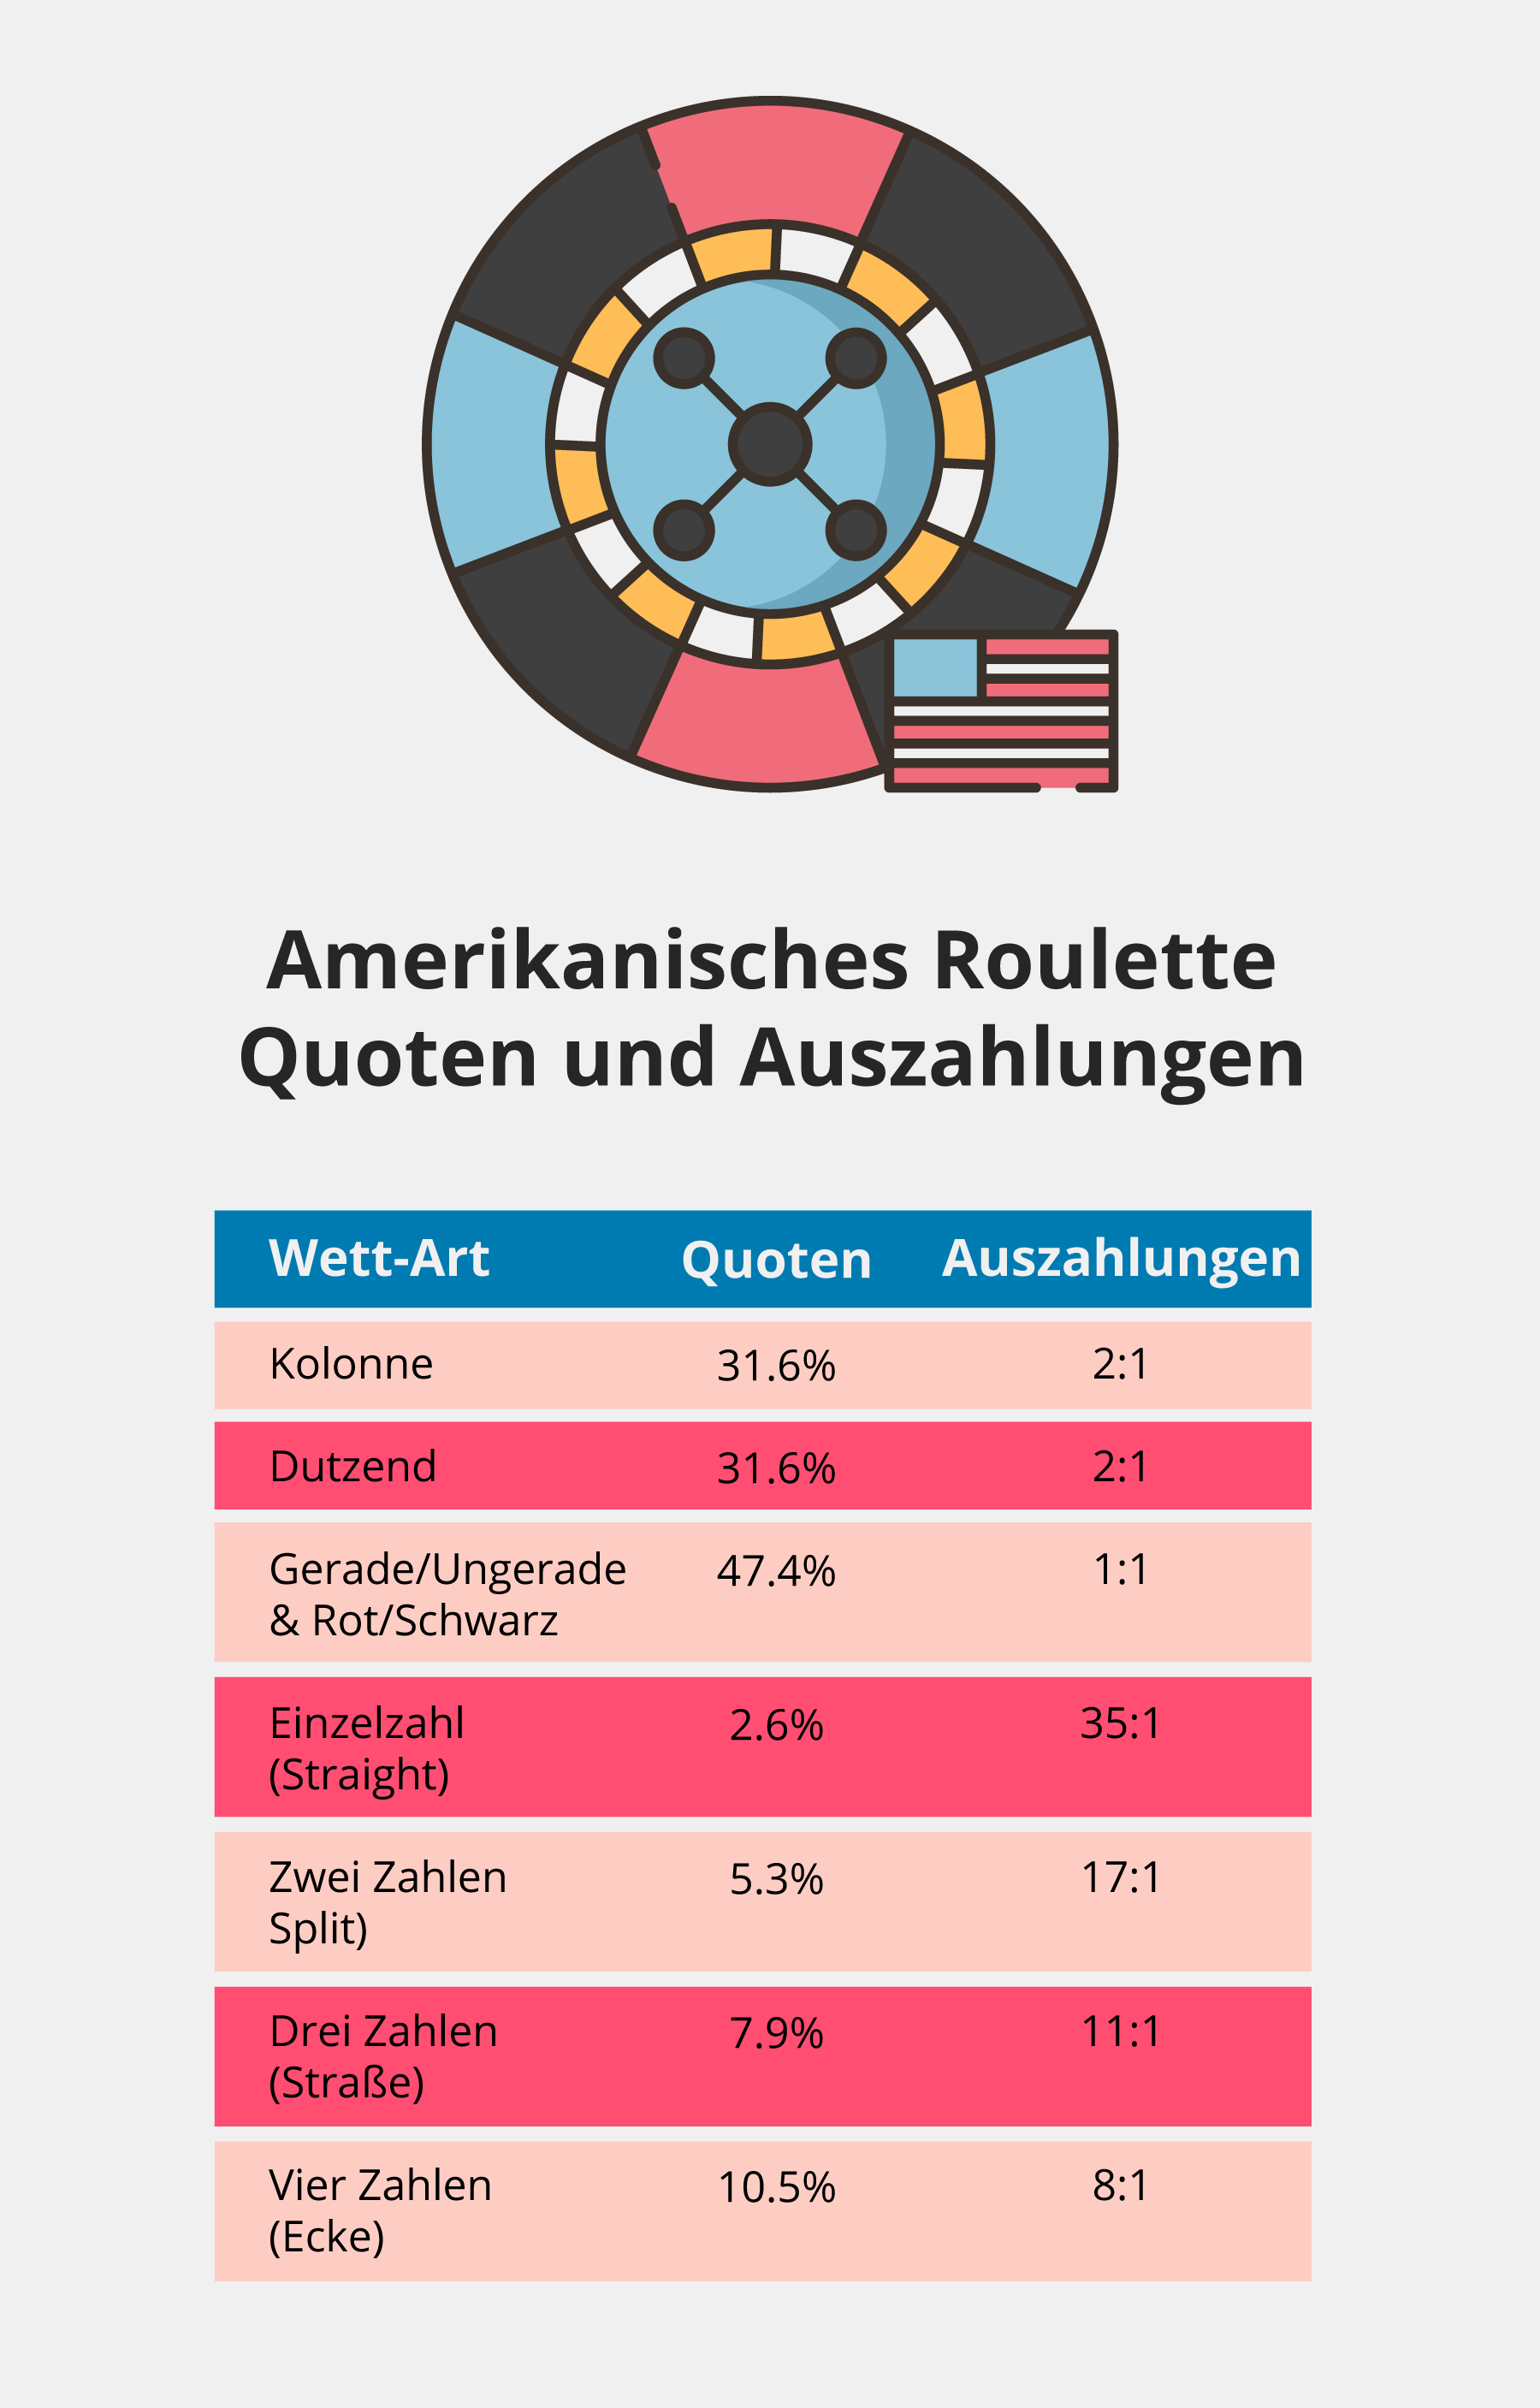 Quoten und Auszahlungen beim Amerikanischen Roulette